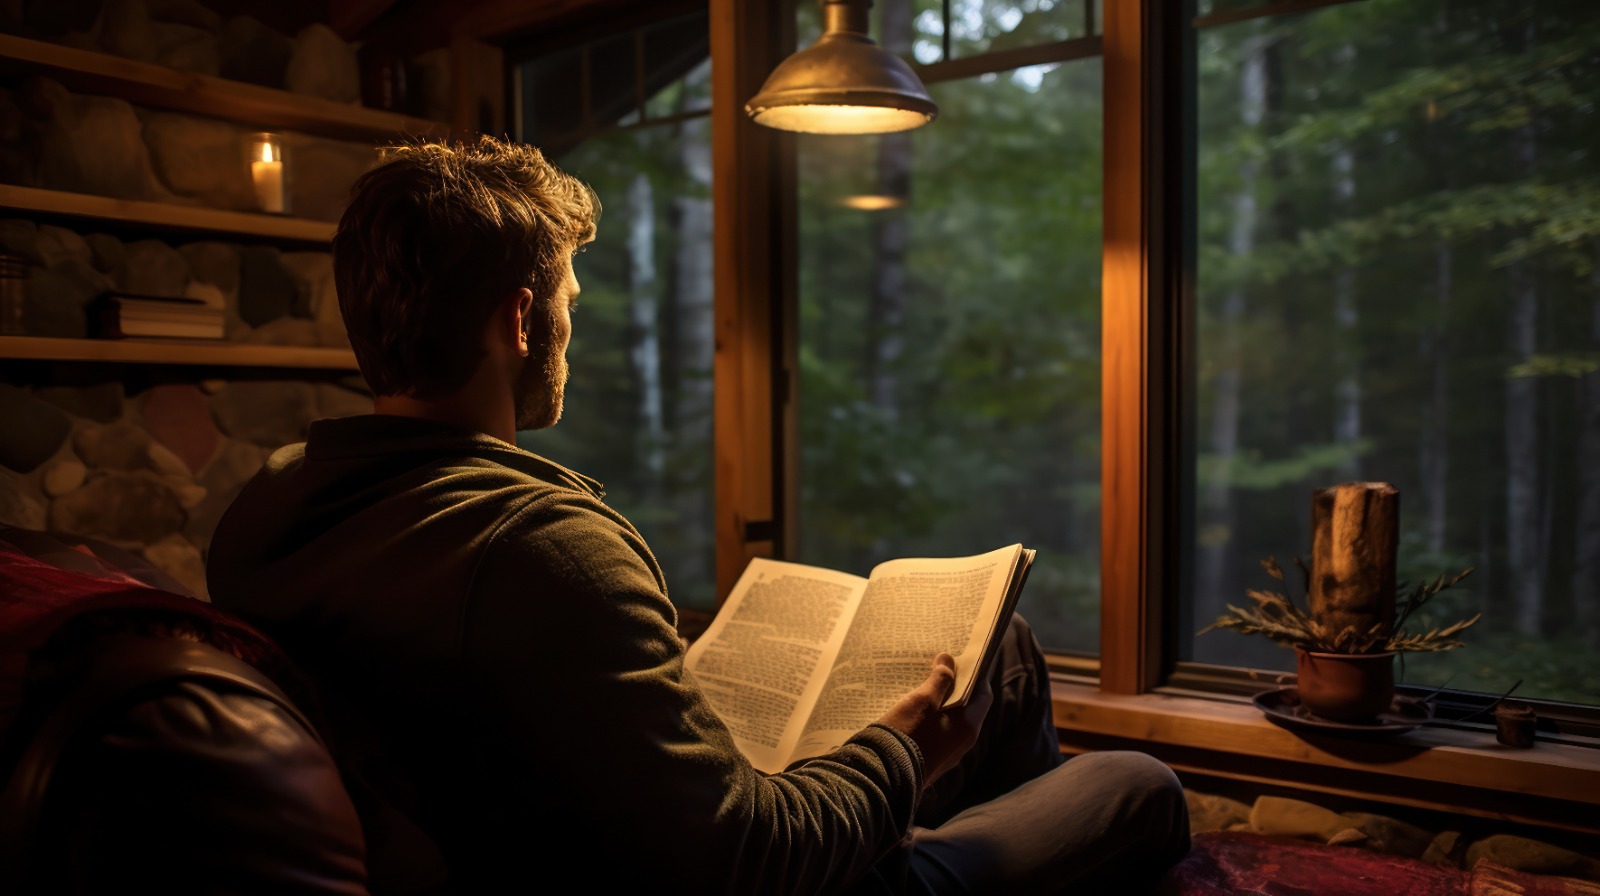 Pessoa lendo um dos Livros de Gustavo Cerbasi em um ambiente aconchegante, iluminado suavemente, com vista para uma floresta.